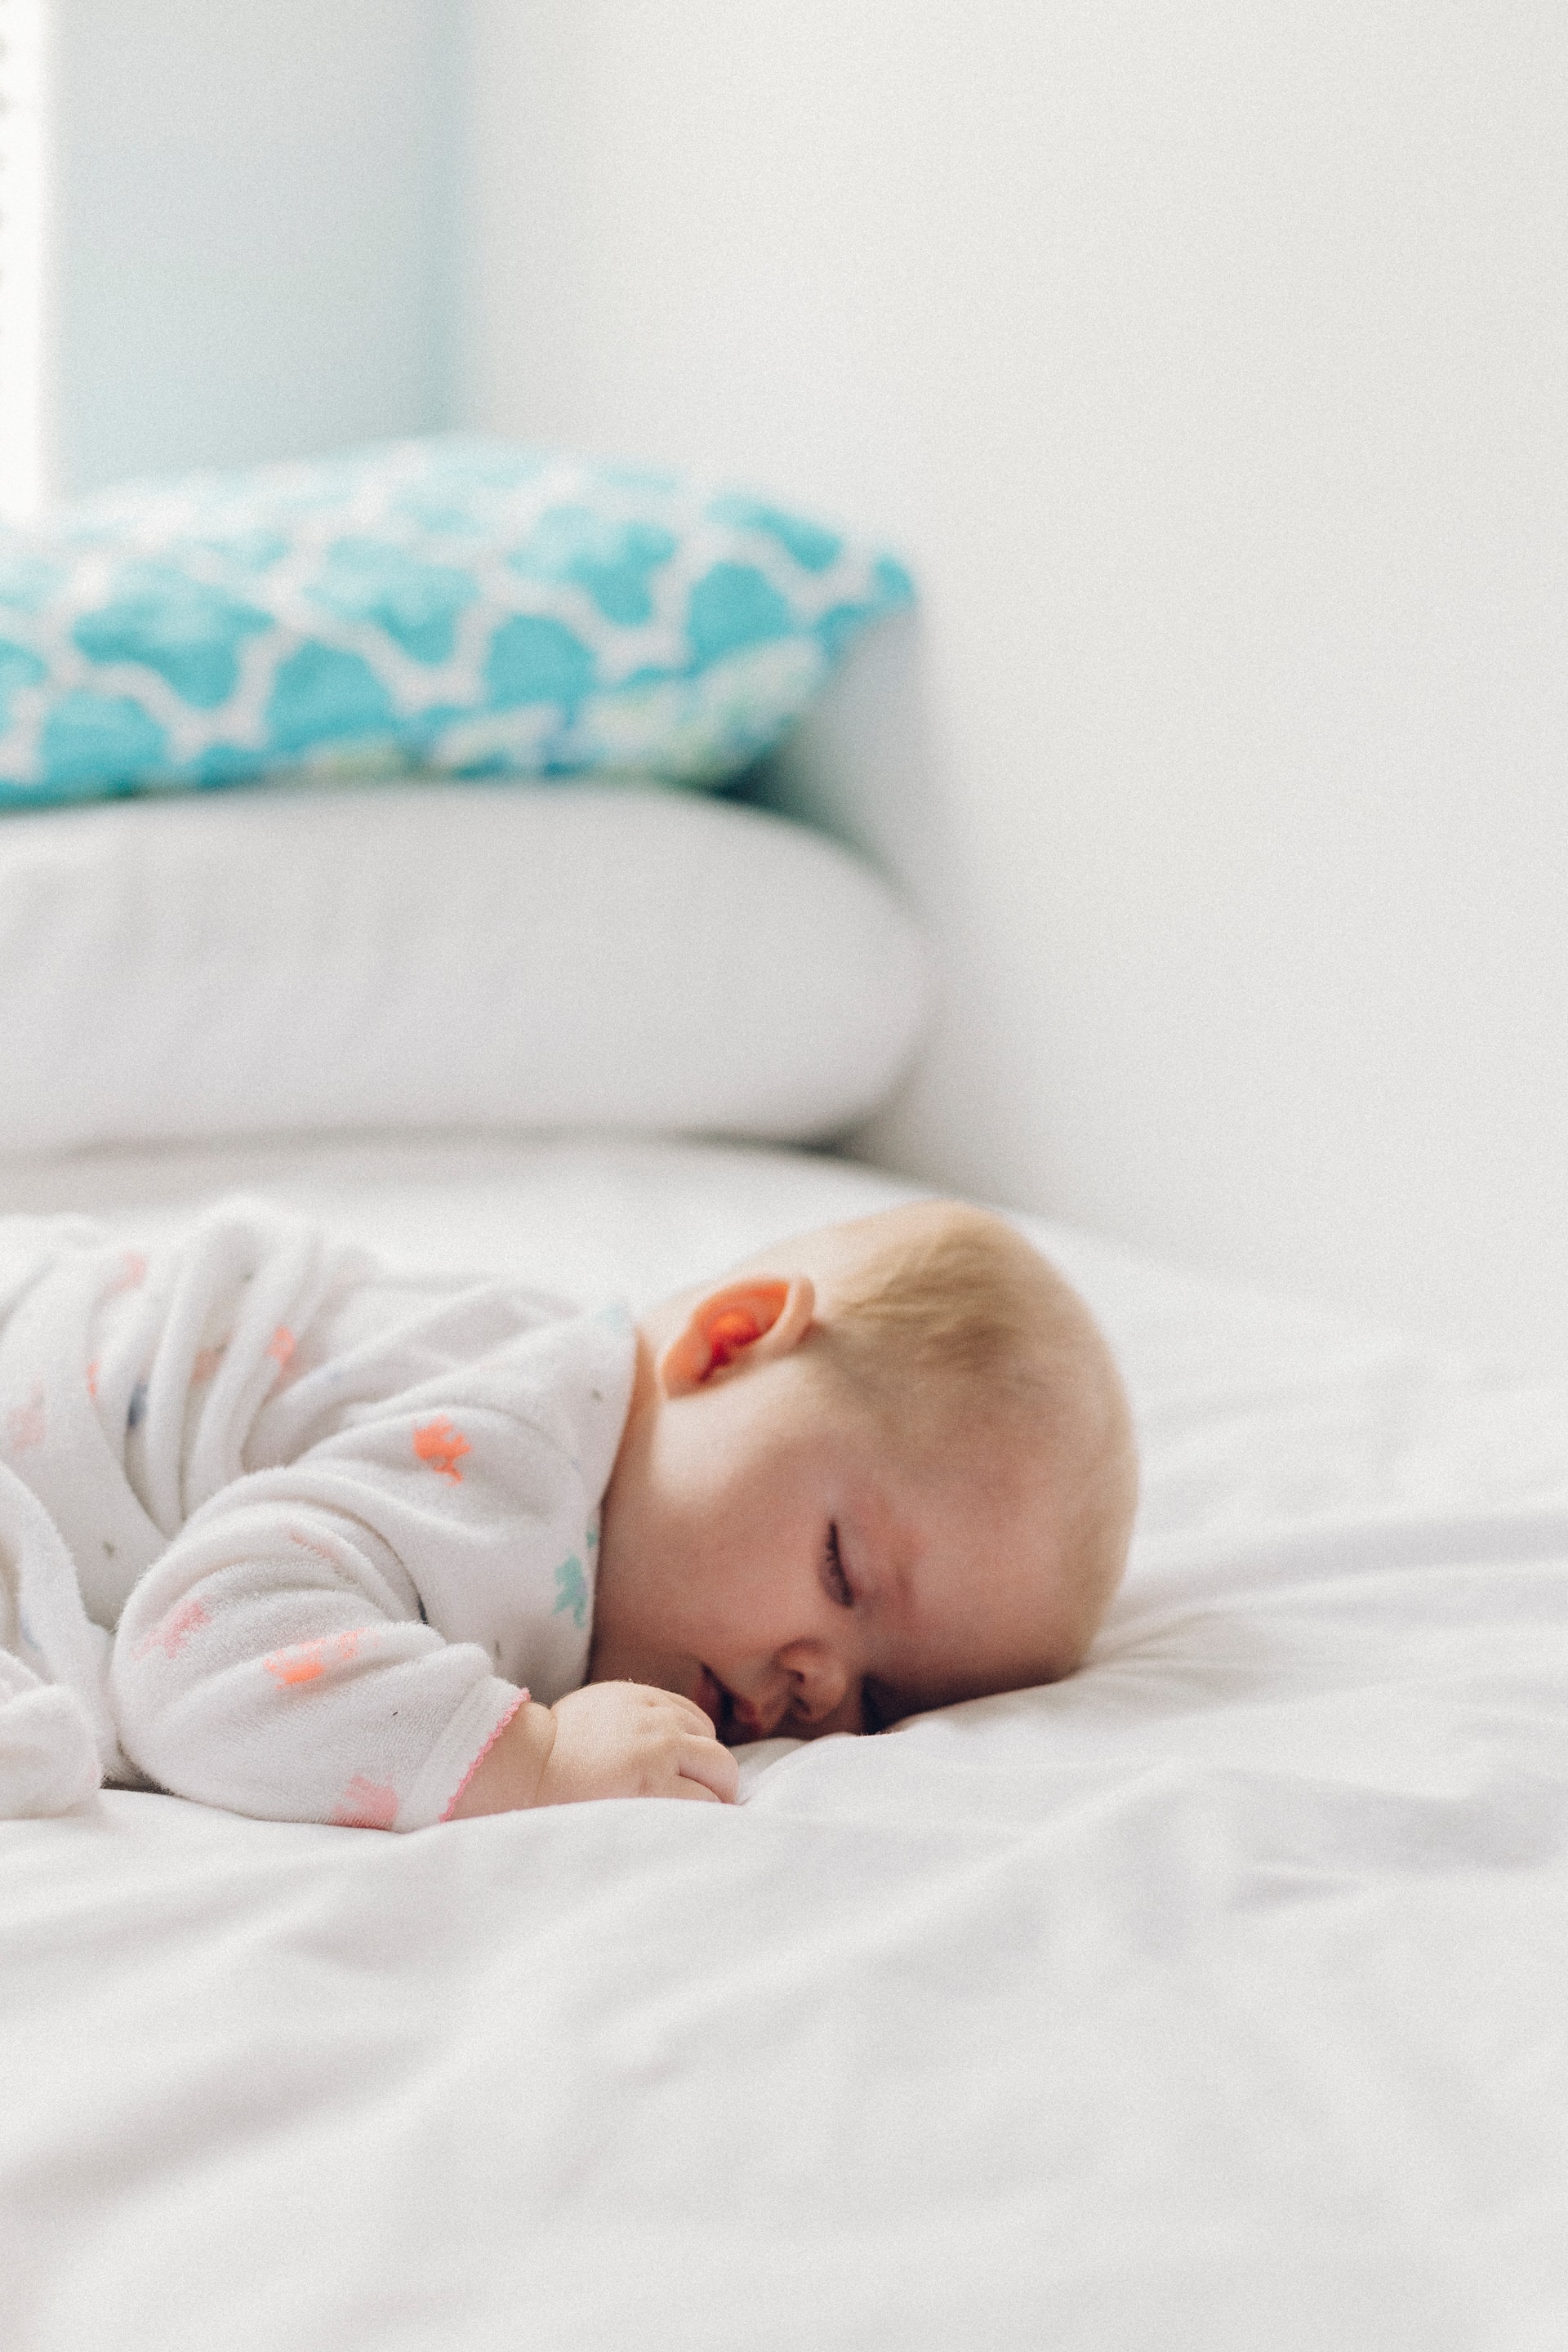 Materasso - spánek dle věku, novorozenci spí až 17 hodin denně.